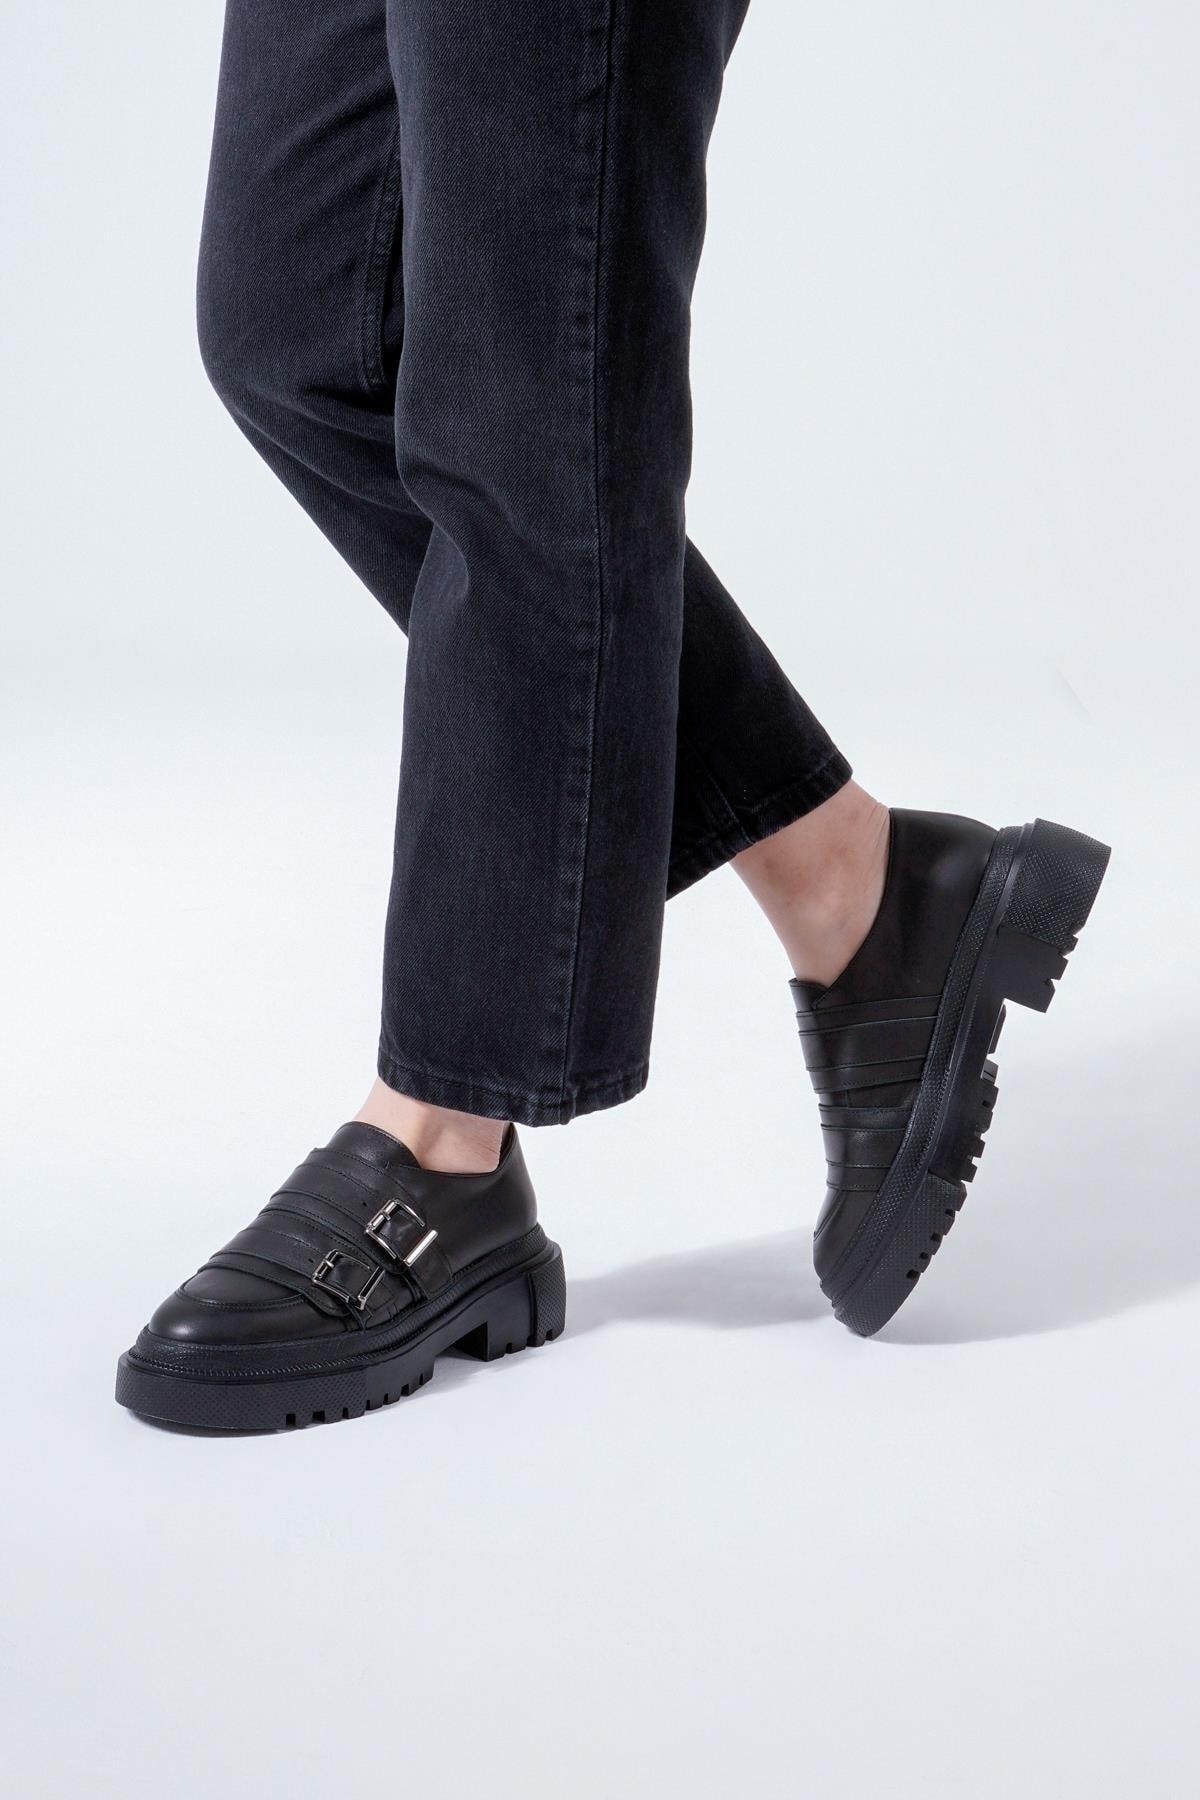 CZ London Hakiki Deri Kadın Kalın Tabanlı Makosen Tokalı Günlük Ayakkabı